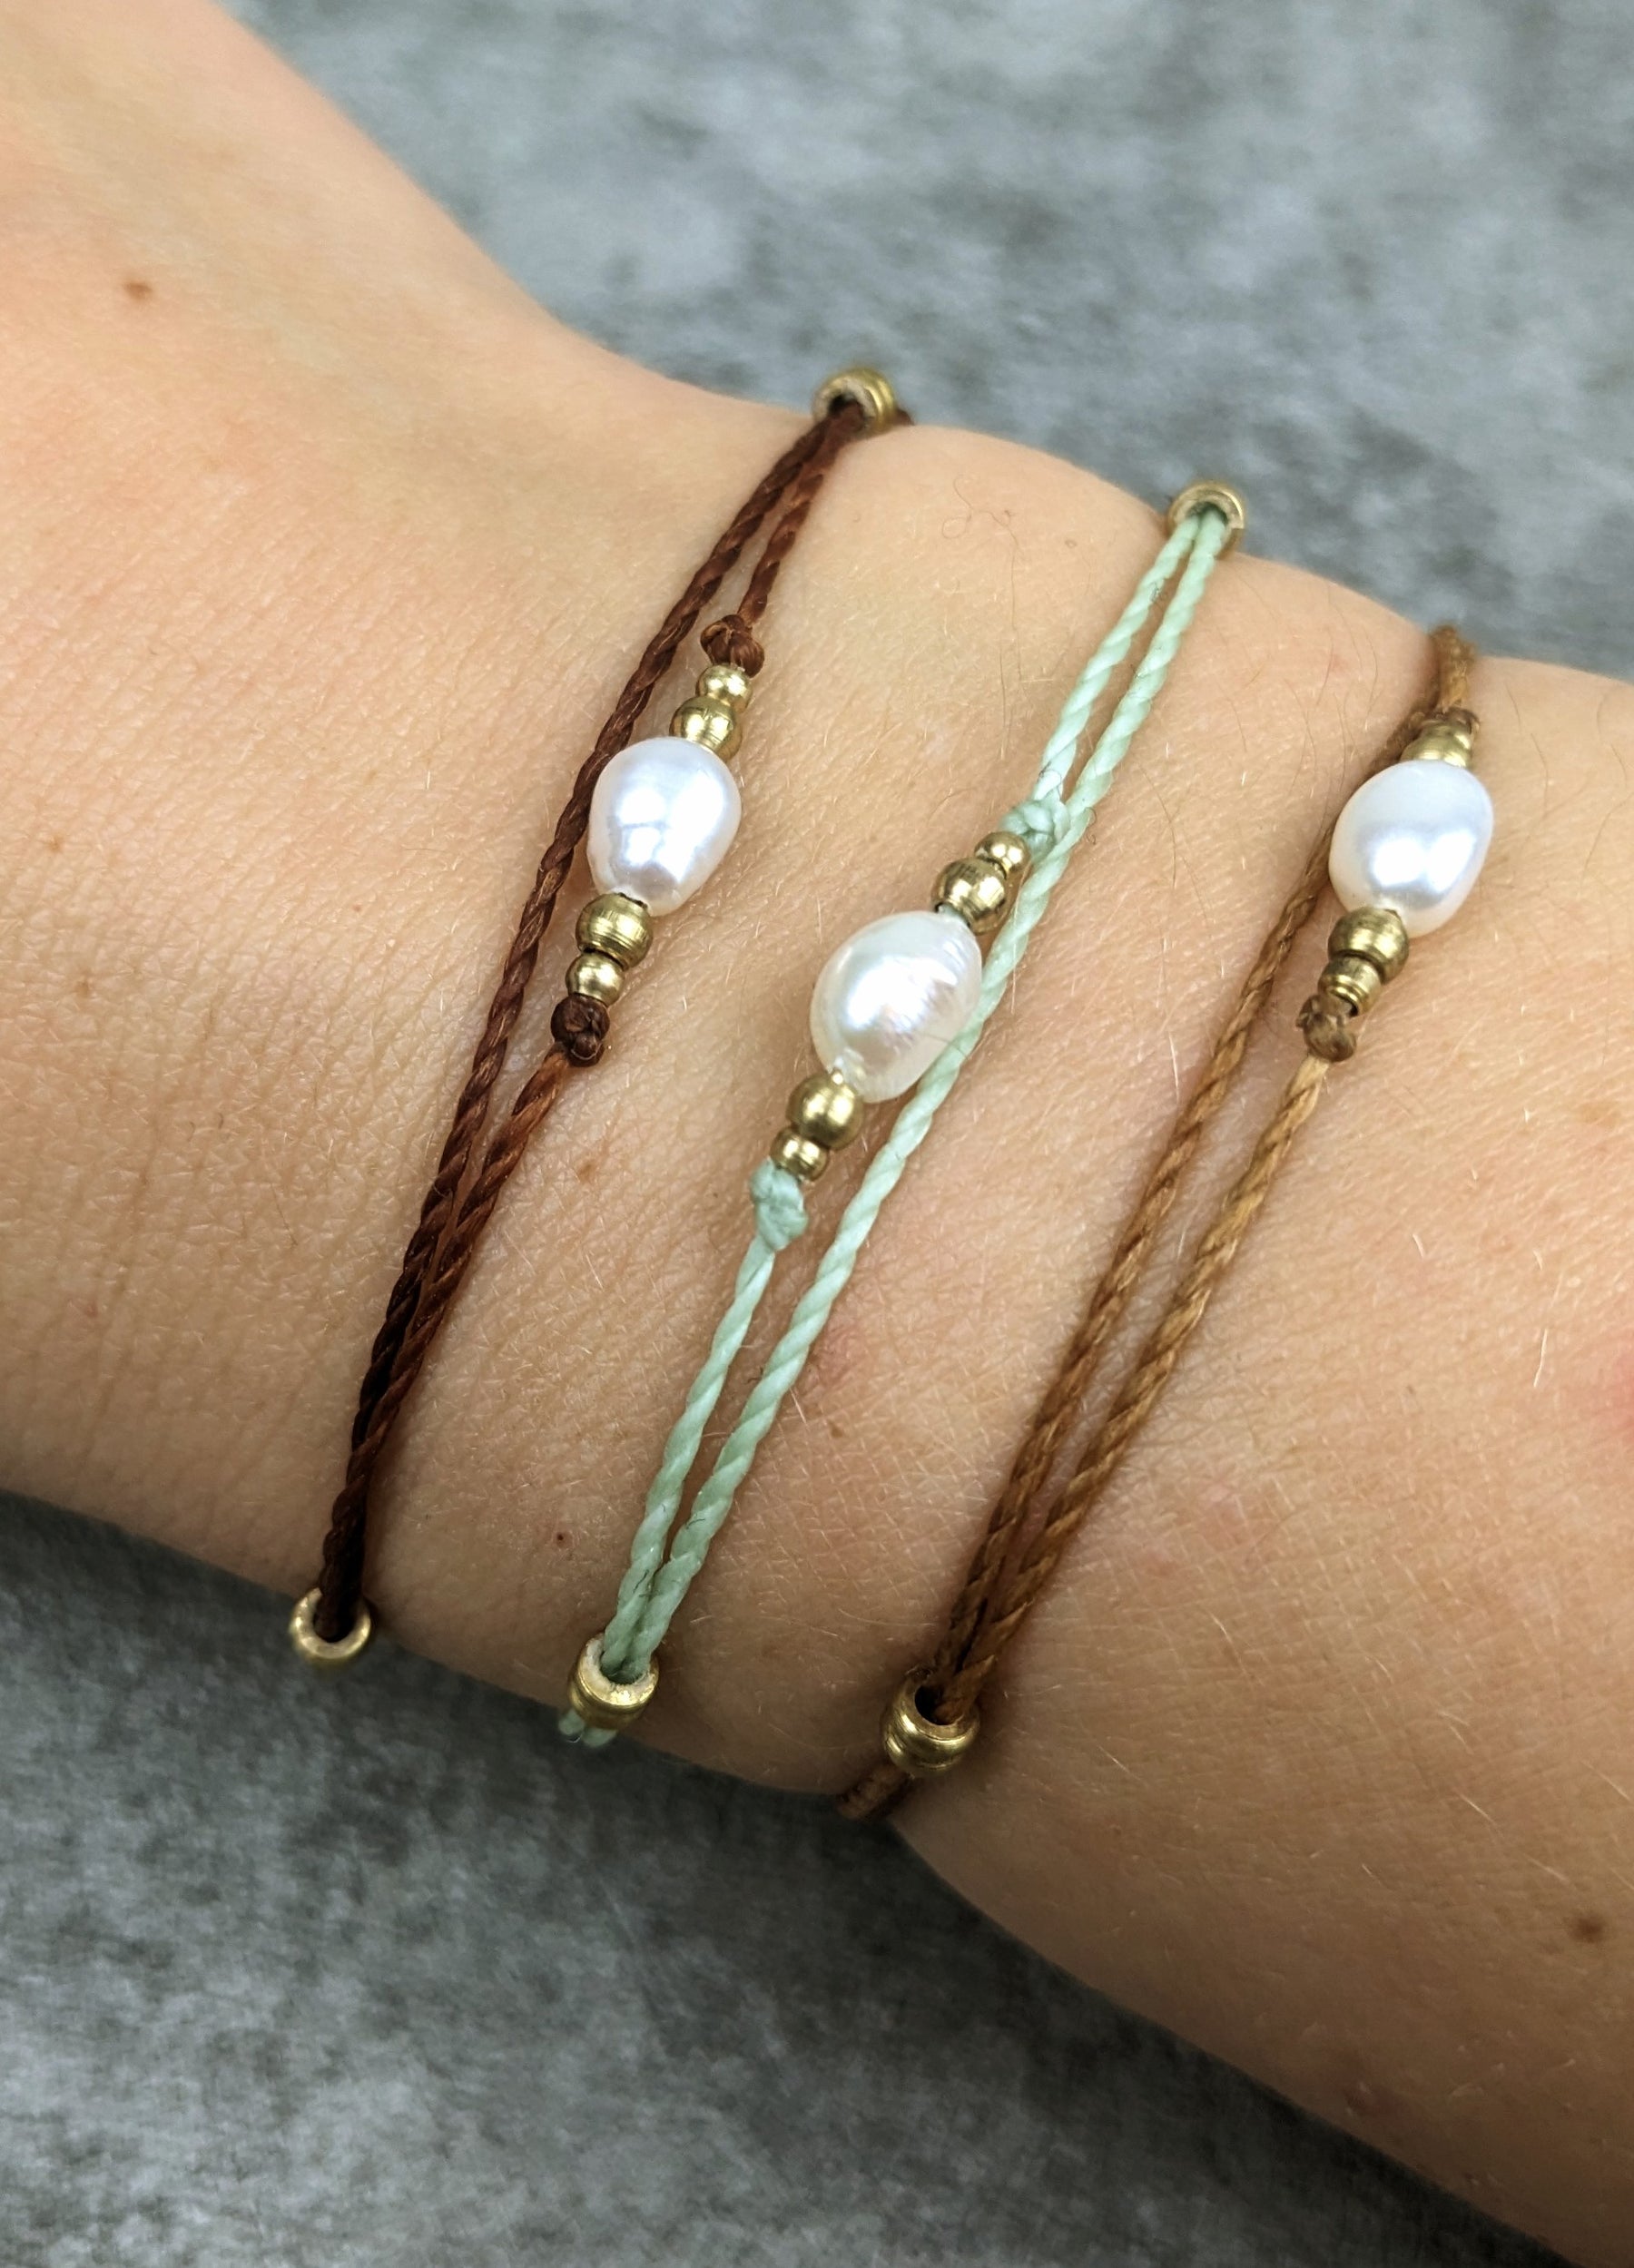 zartes süßwasser perlen armband mit weißer perle und buntem nylongarn, sowie kleinen messingperlen